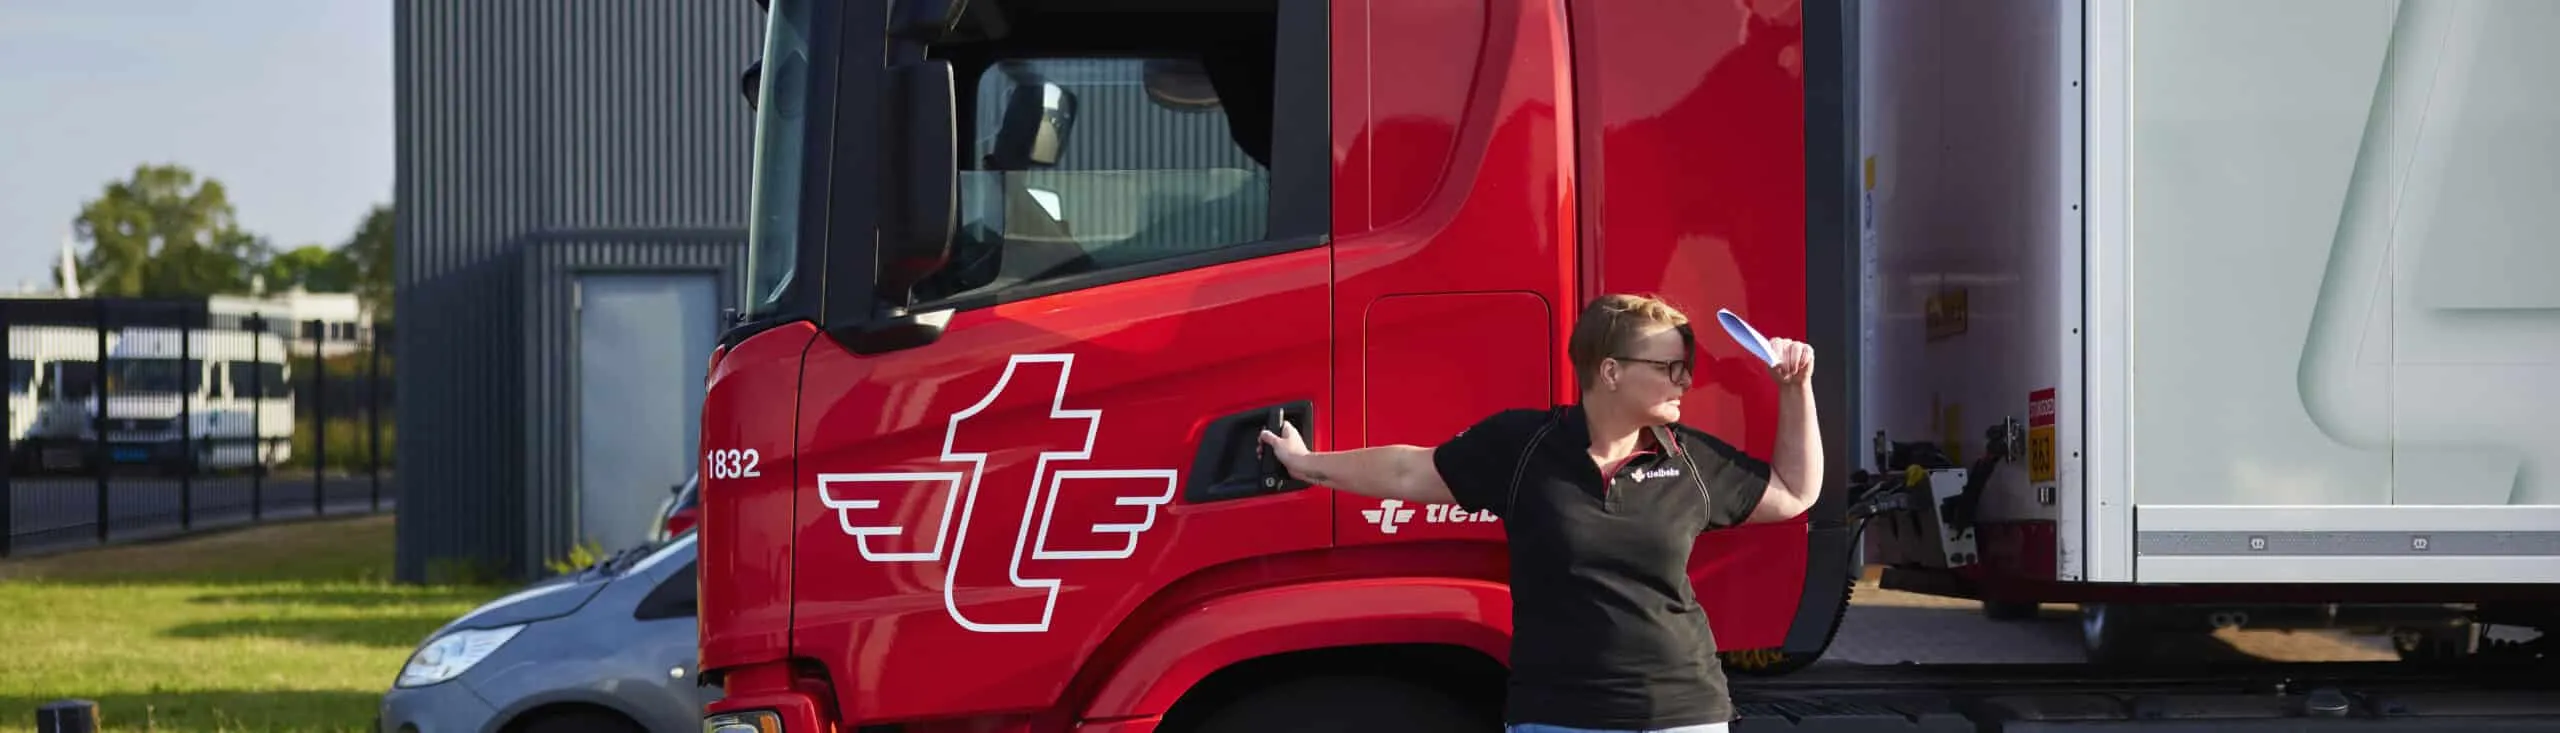 Chauffeur Linda Dogger staat voor de deur van haar vrachtwagen